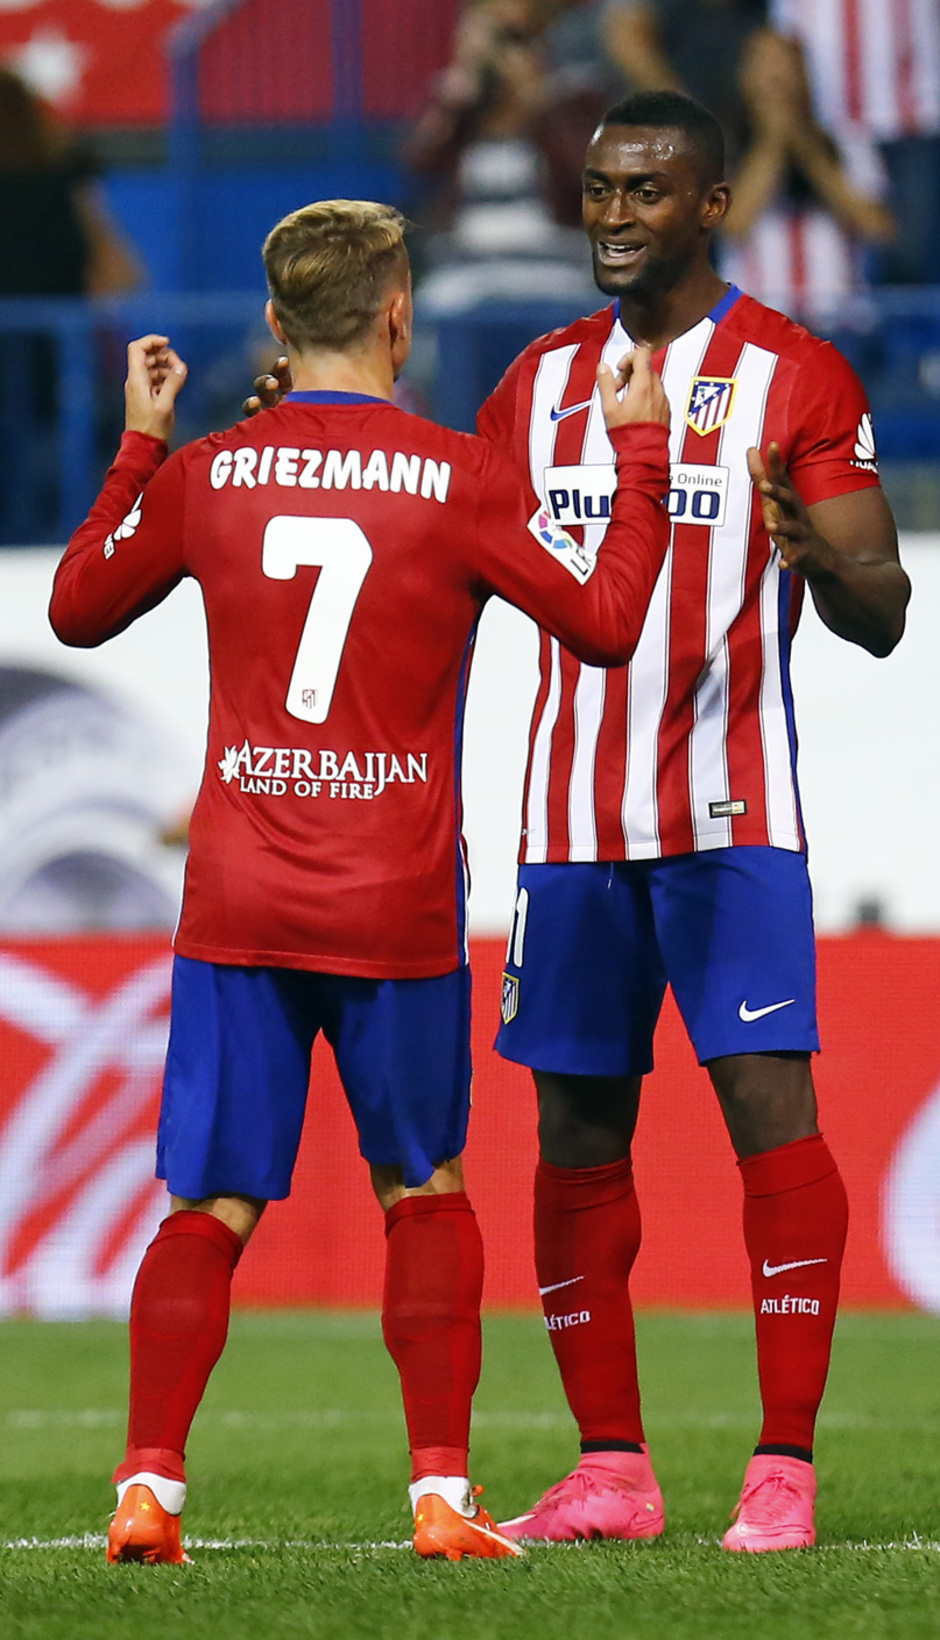 Temporada 2015-2016 Atlético de Madrid-Getafe. Griezmann y Jackson